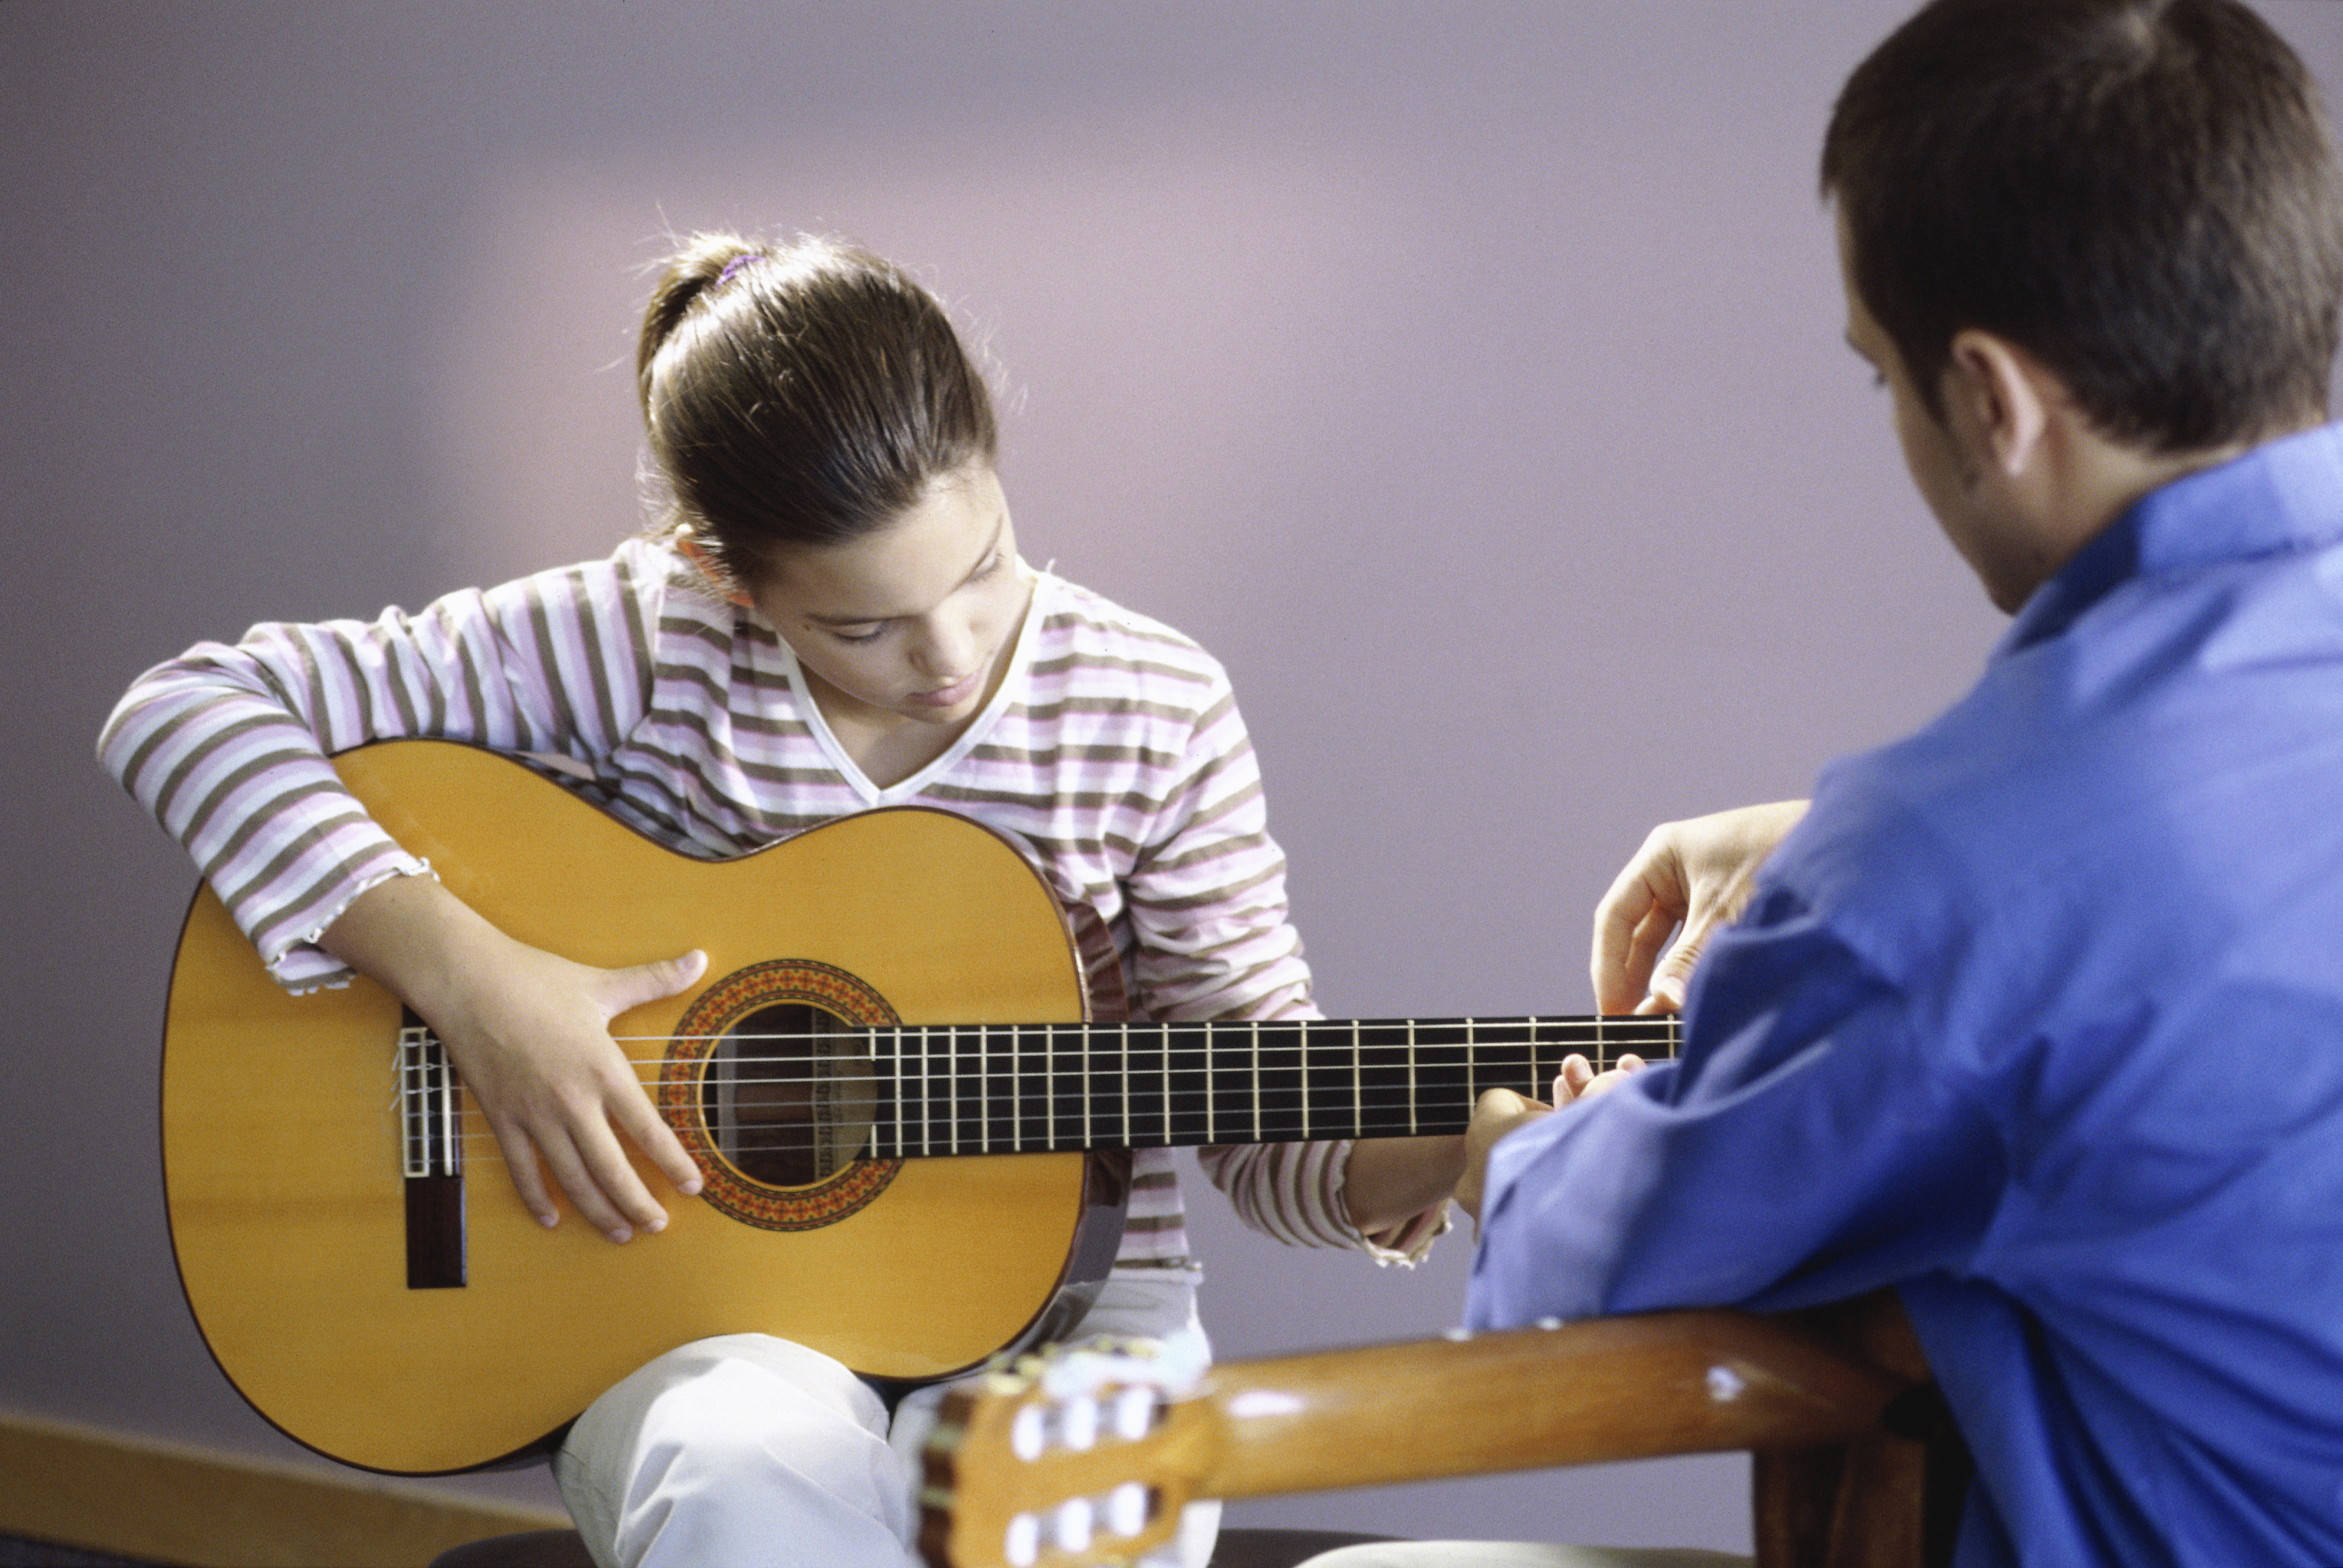 Бесплатные видео уроки игры на гитаре. Музыкальная школа Виртуозы. Уроки гитары. Игра на гитаре. Занятия на гитаре.